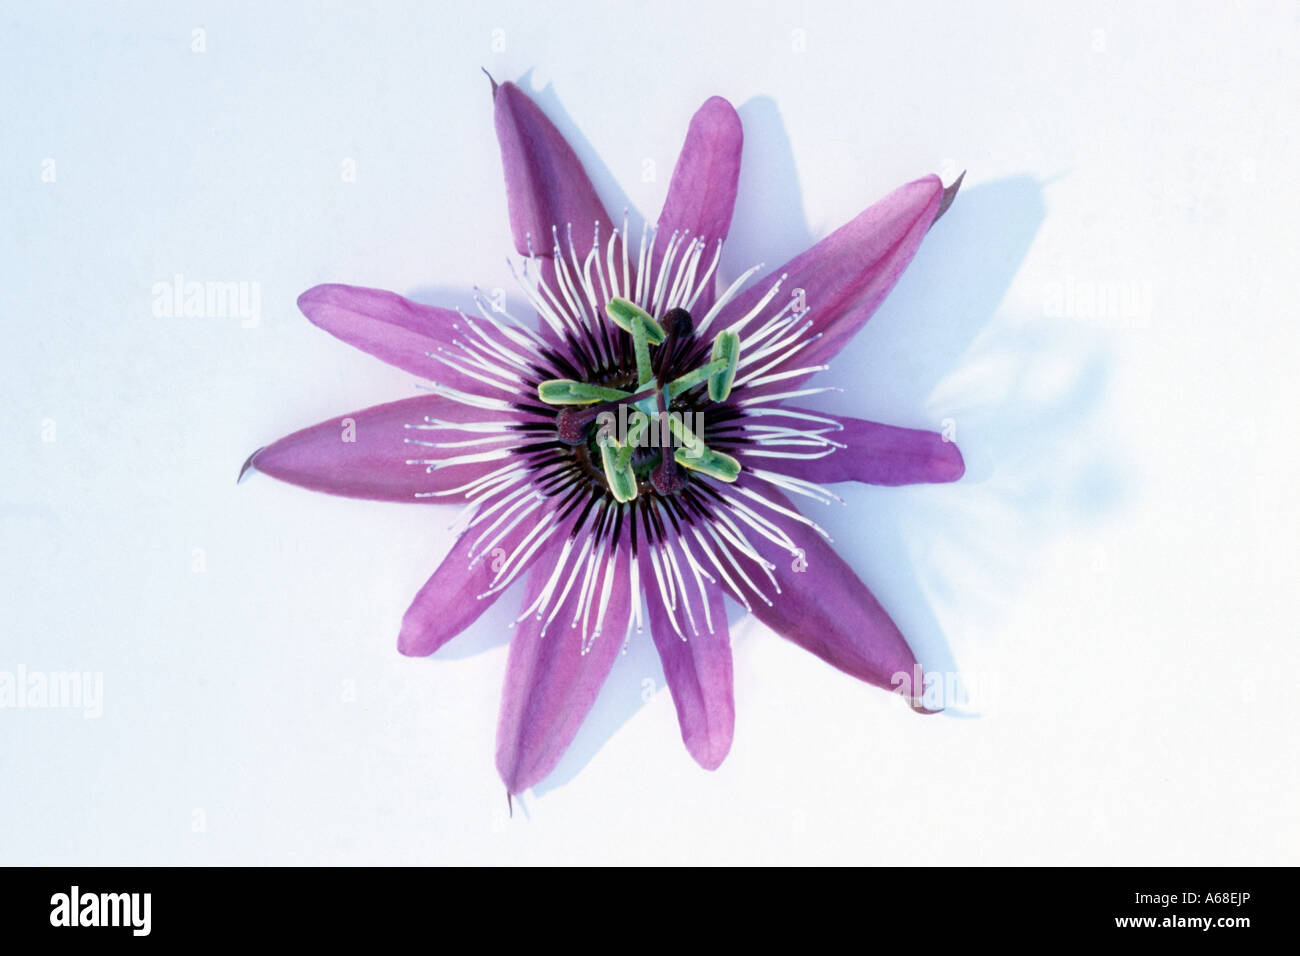 Fiore della passione (Passiflora sp.), fiore studio immagine Foto Stock